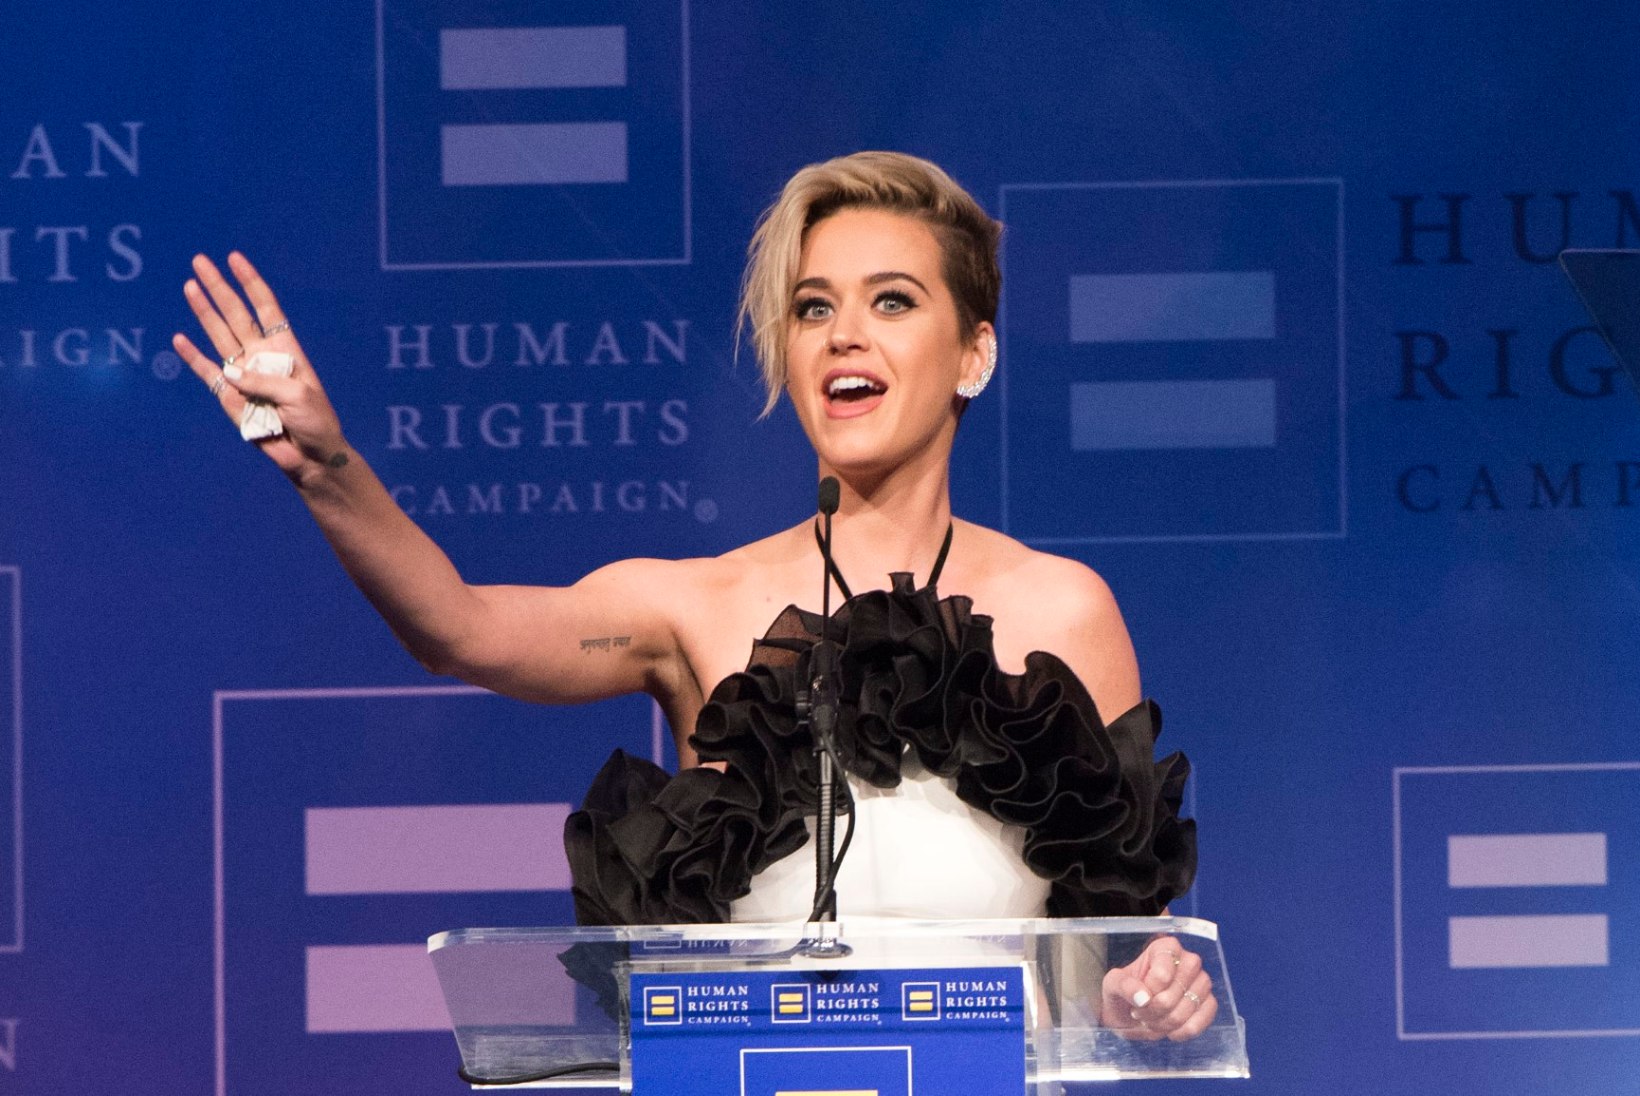 Paks pahandus: Katy Perry võrdles end hindu jumalannaga